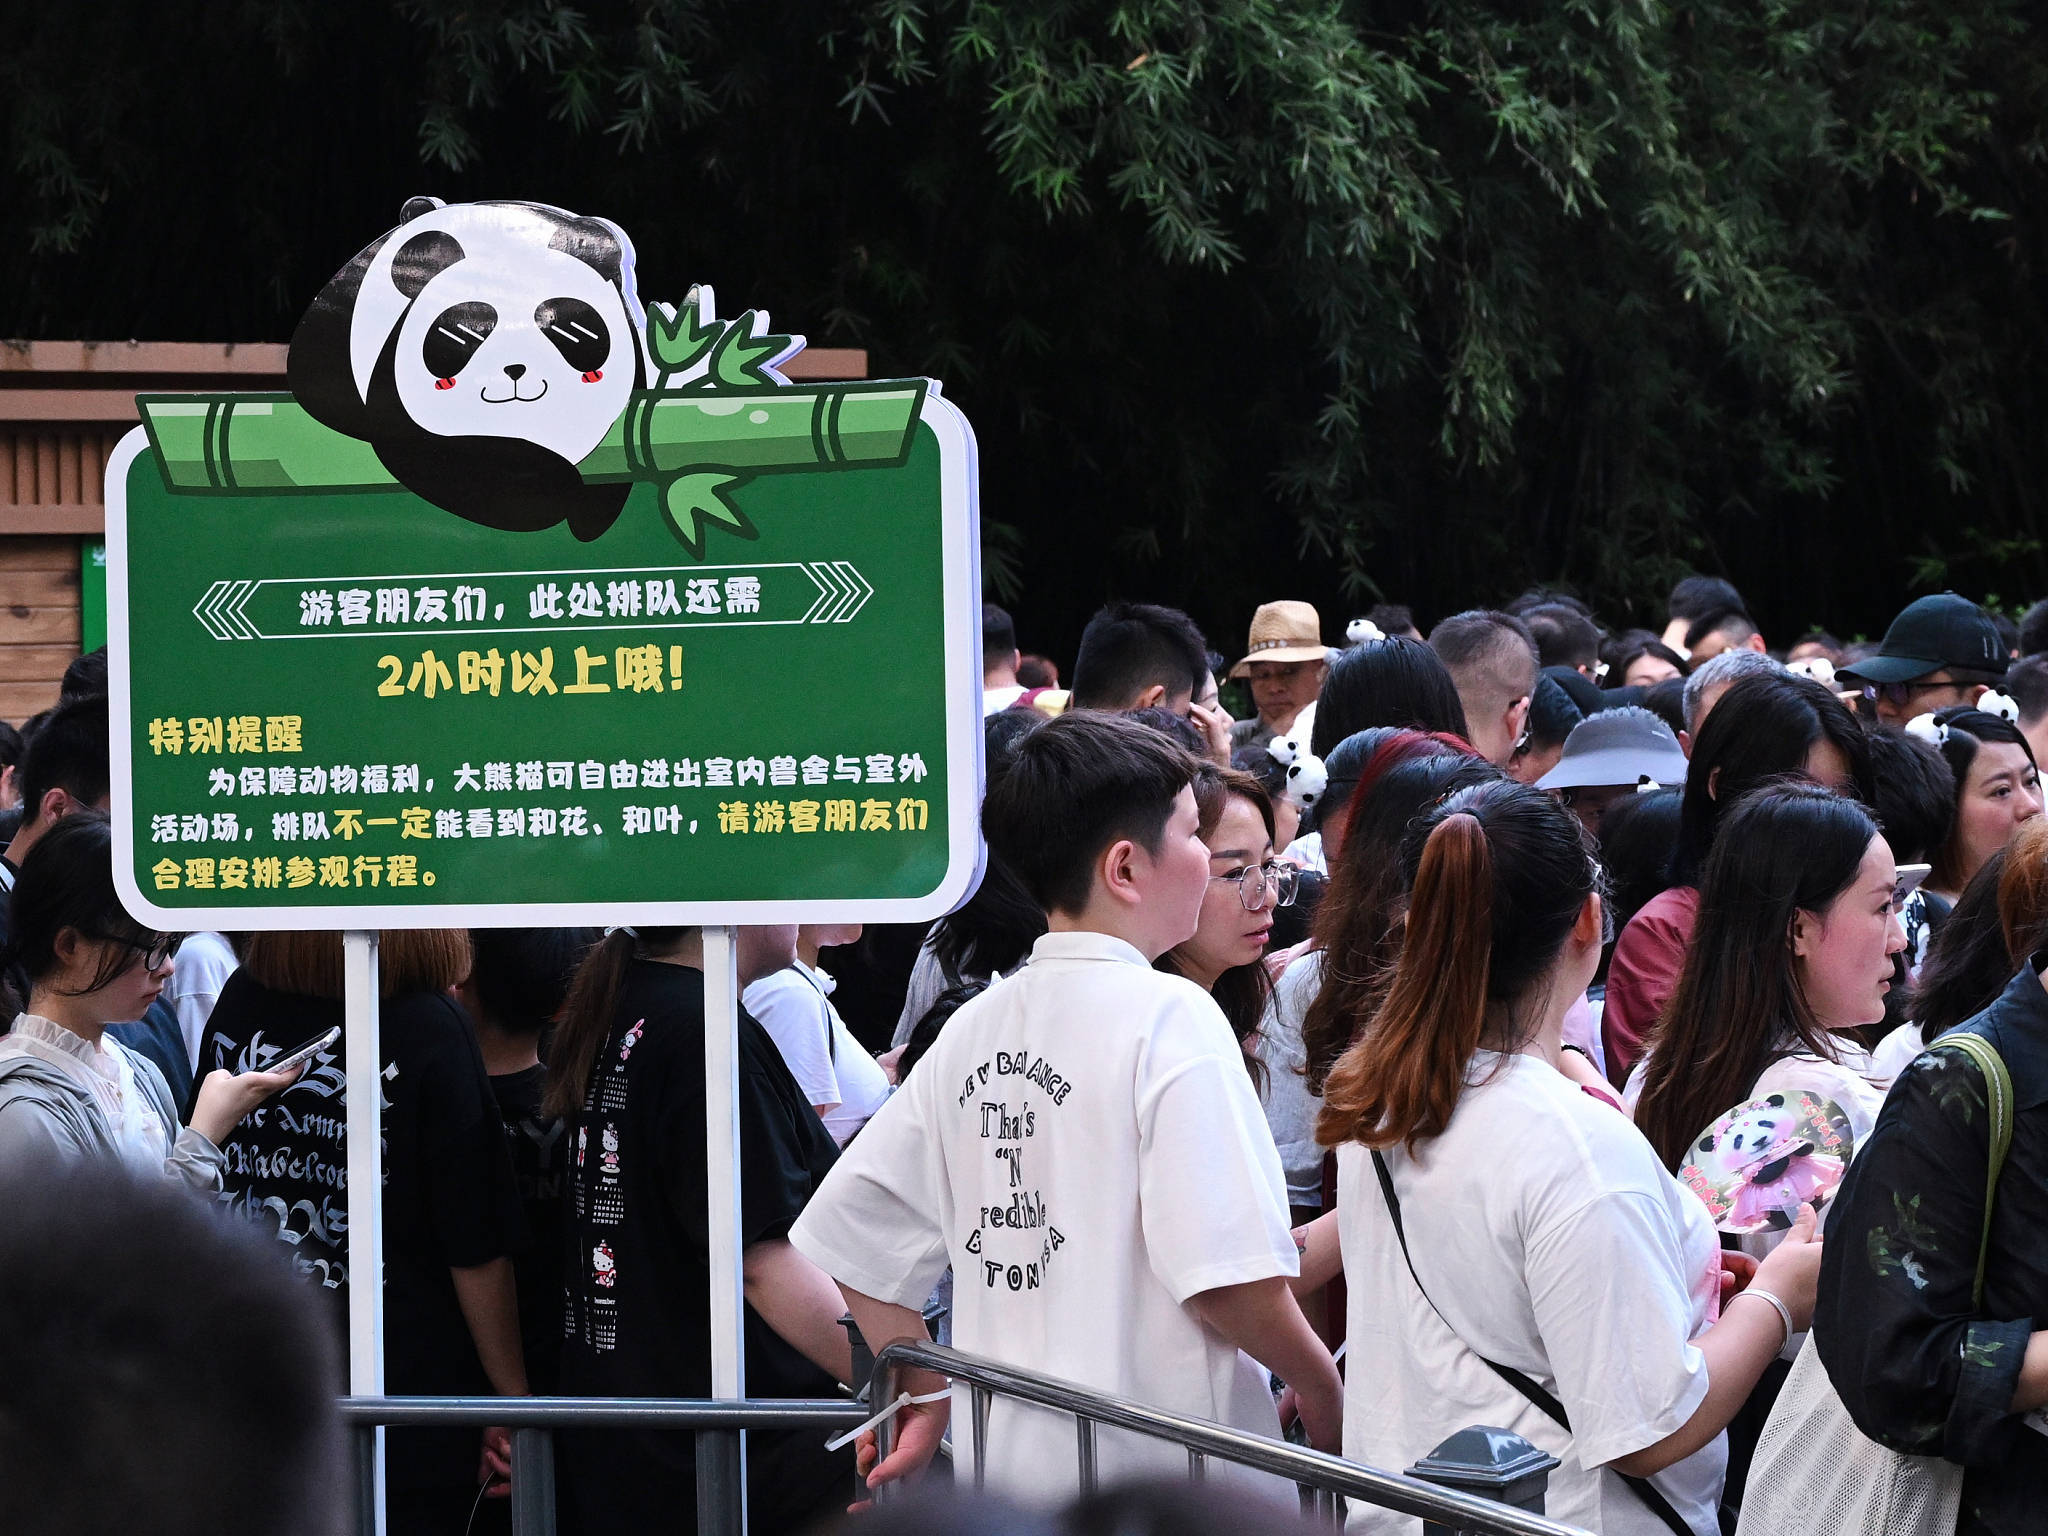 三大顶流 庆生 粉丝通宵排队 直击 为熊猫界